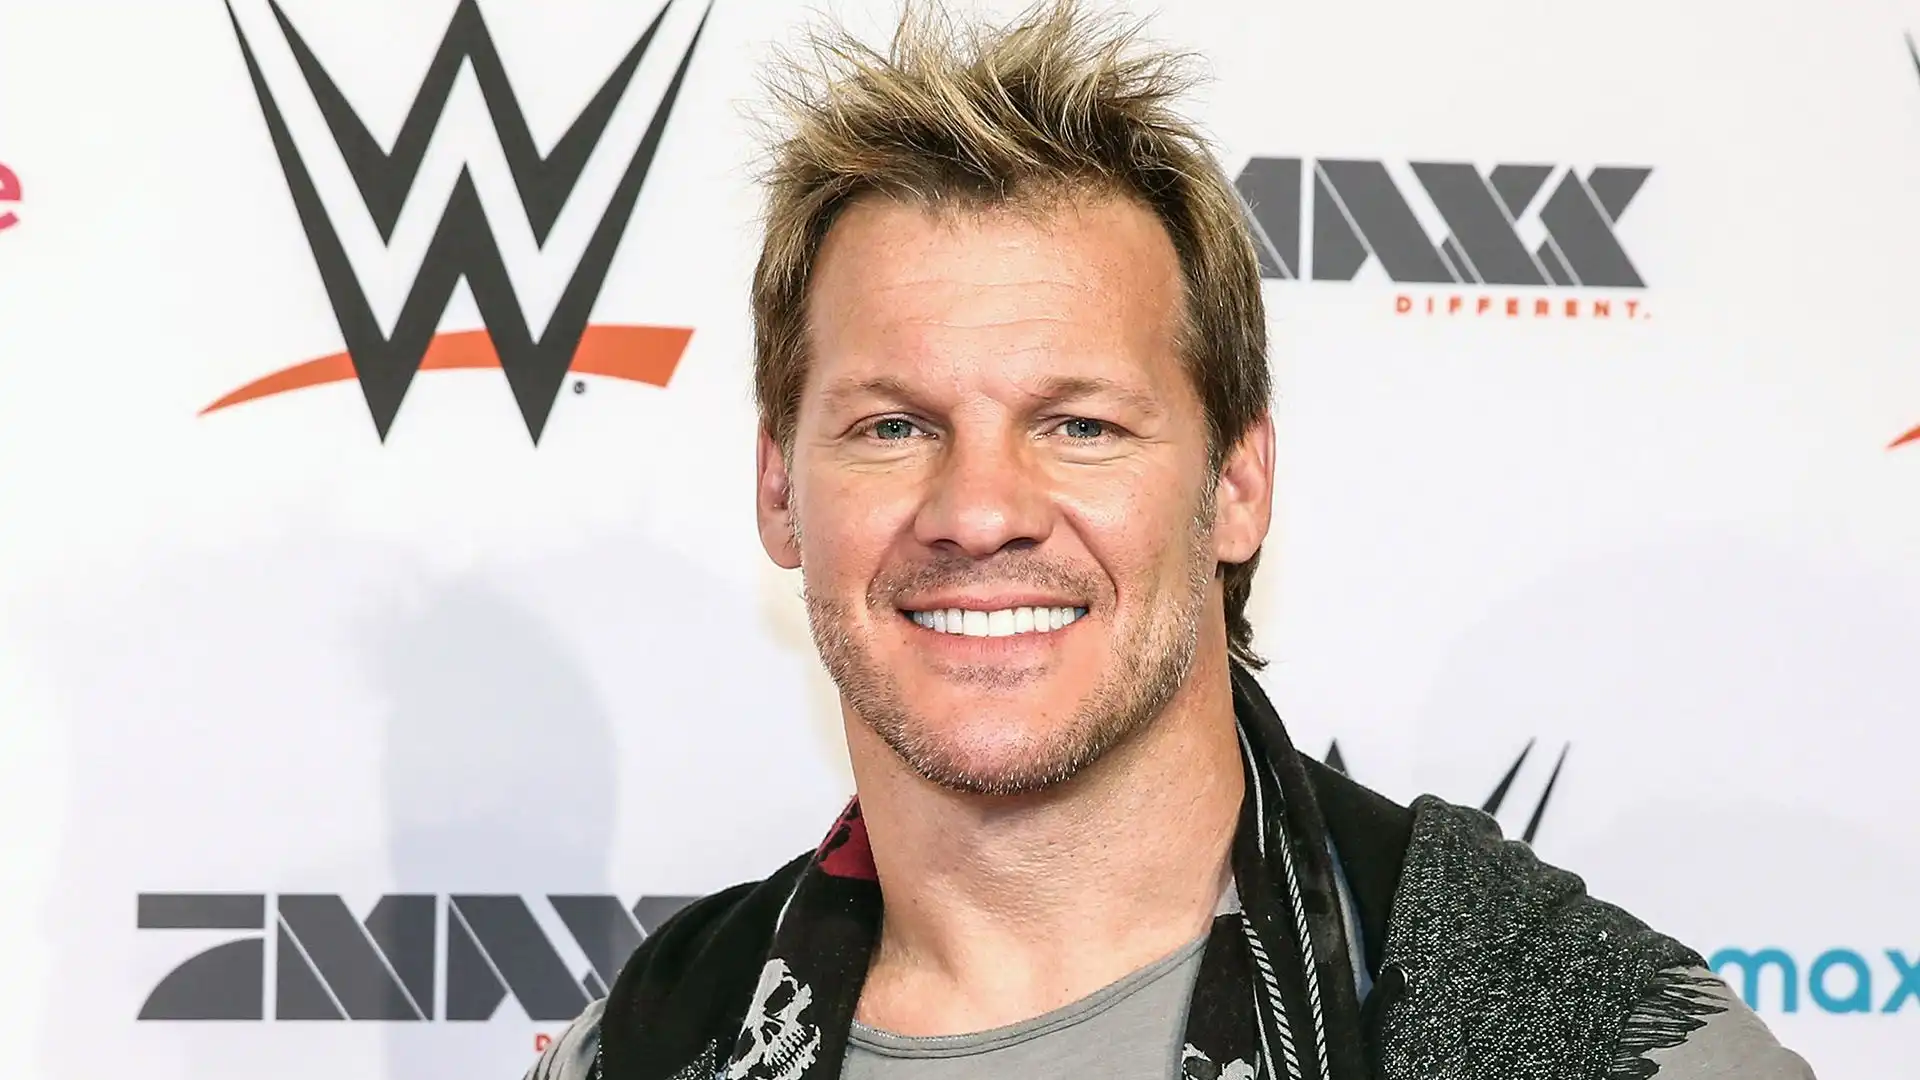 7 Chris Jericho: patrimonio netto 18 milioni di dollari. Ha vinto 36 titoli in carriera in tutto il mondo, per otto volte è stato campione mondiale